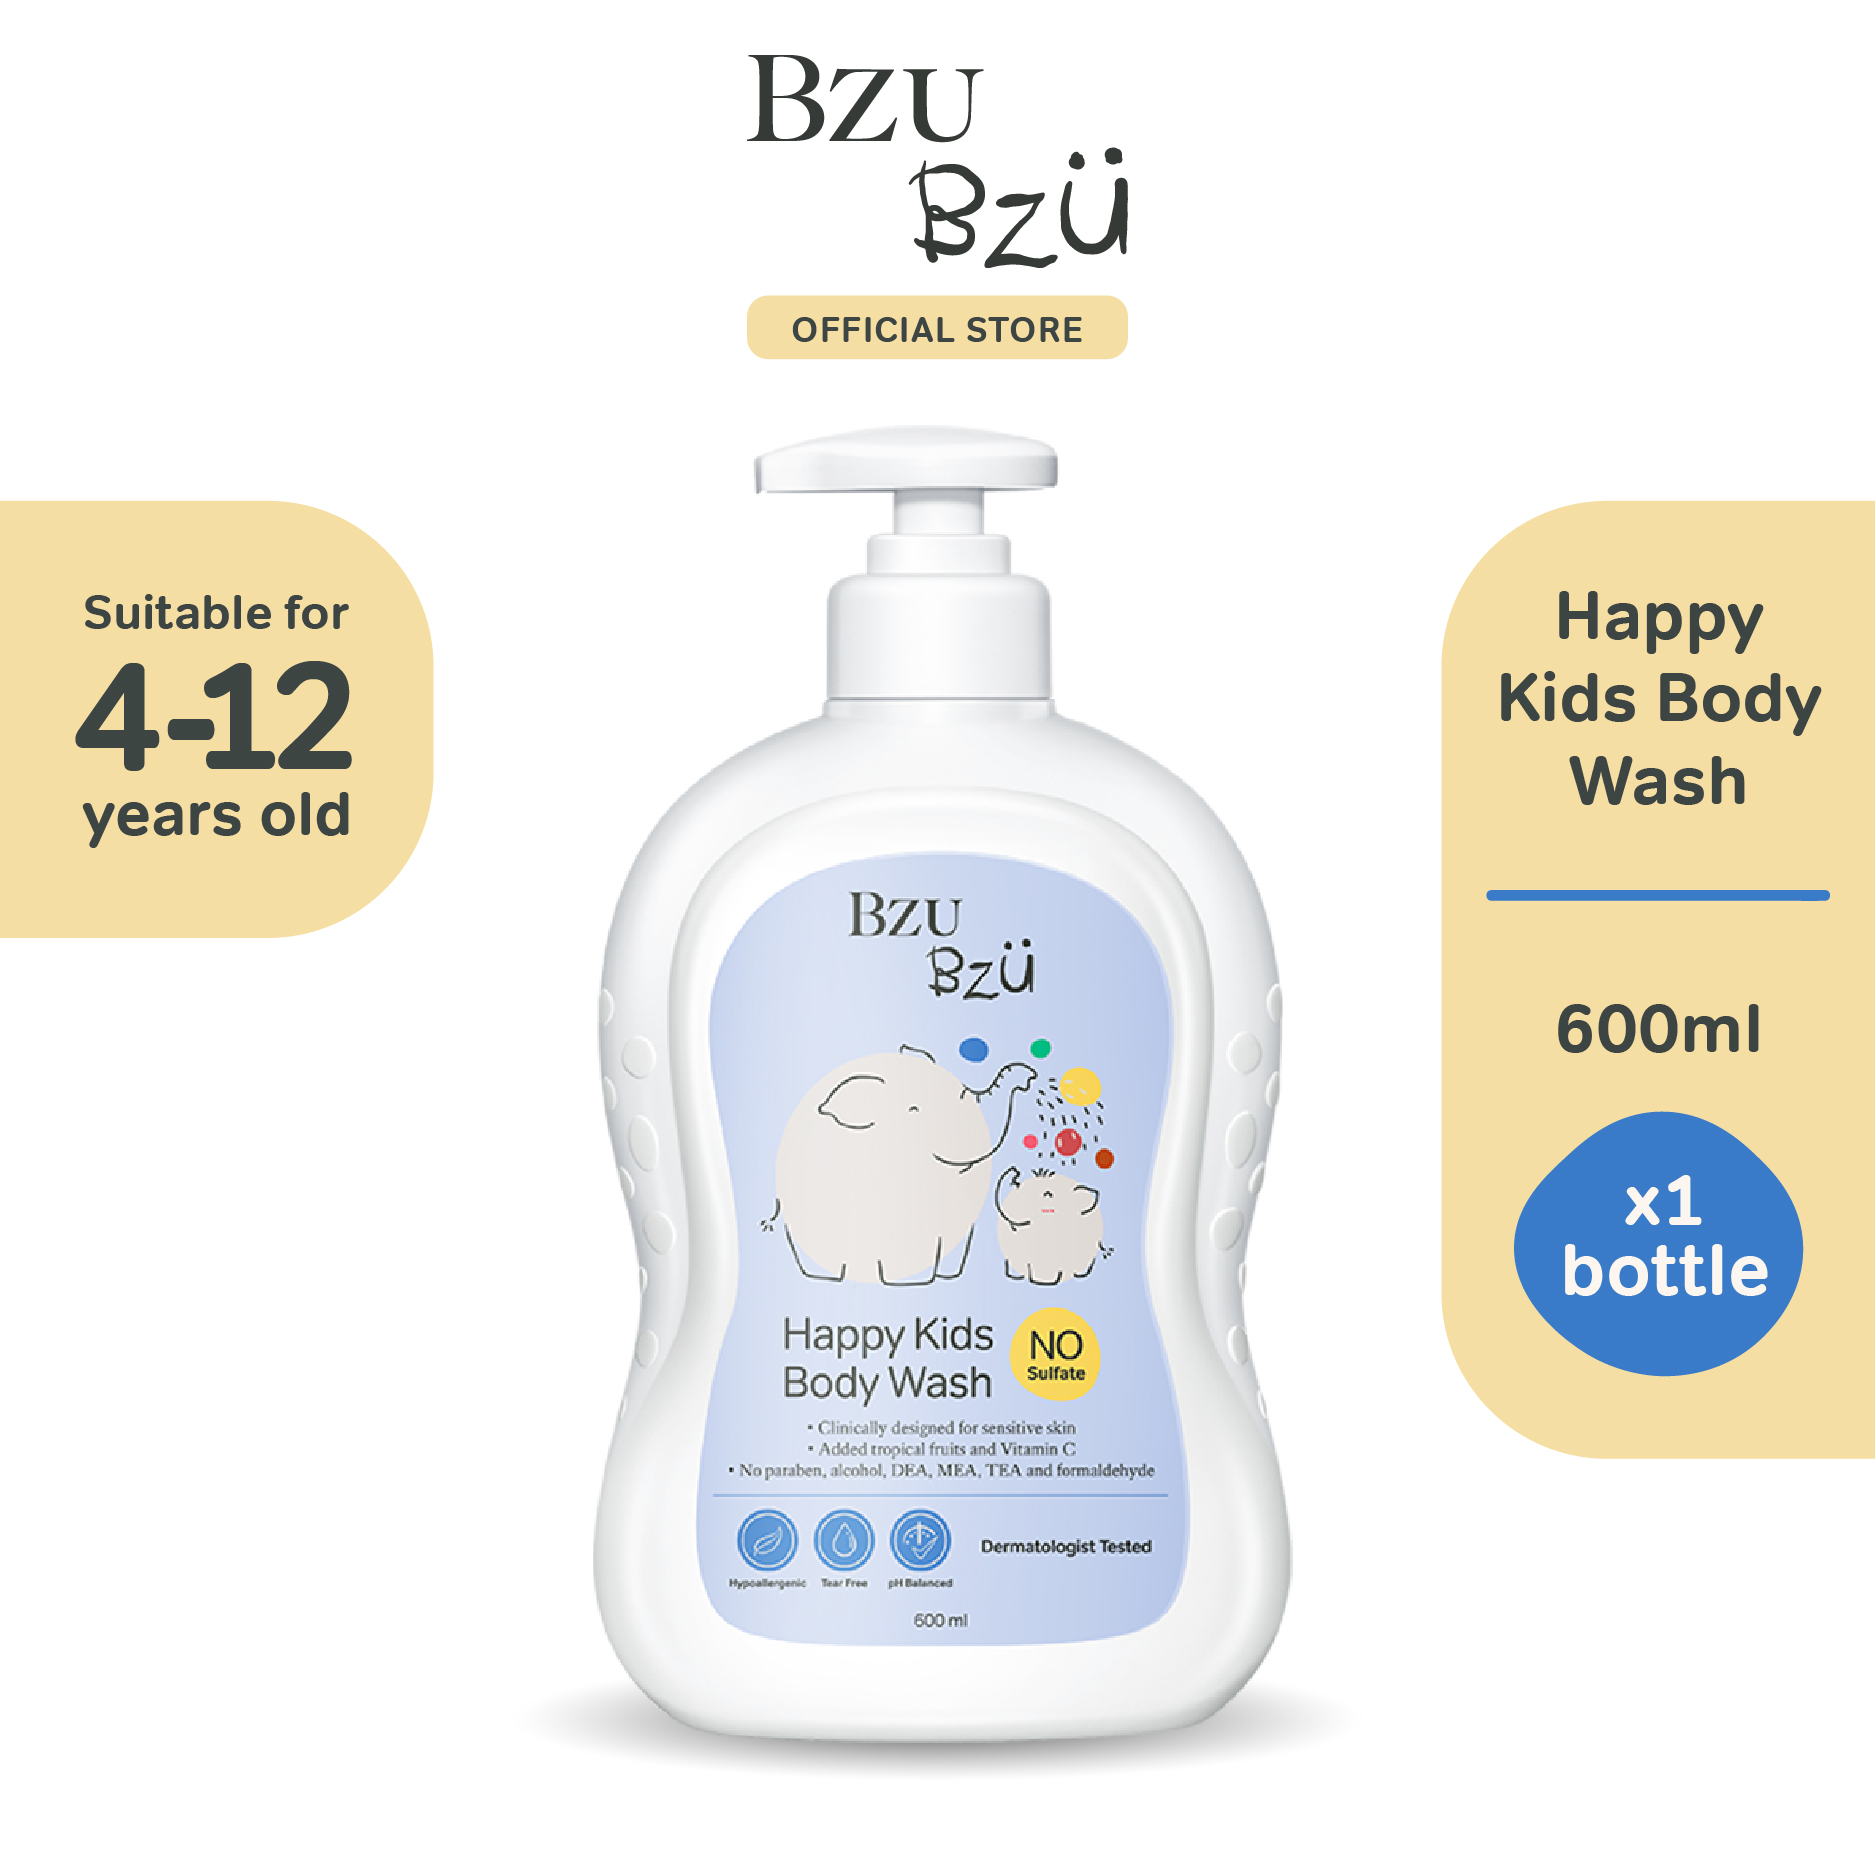 baby-fair Bzu Bzu Happy Kids Body Wash 600ml + FREE Foldable Wash Basin (worth $10.50!)